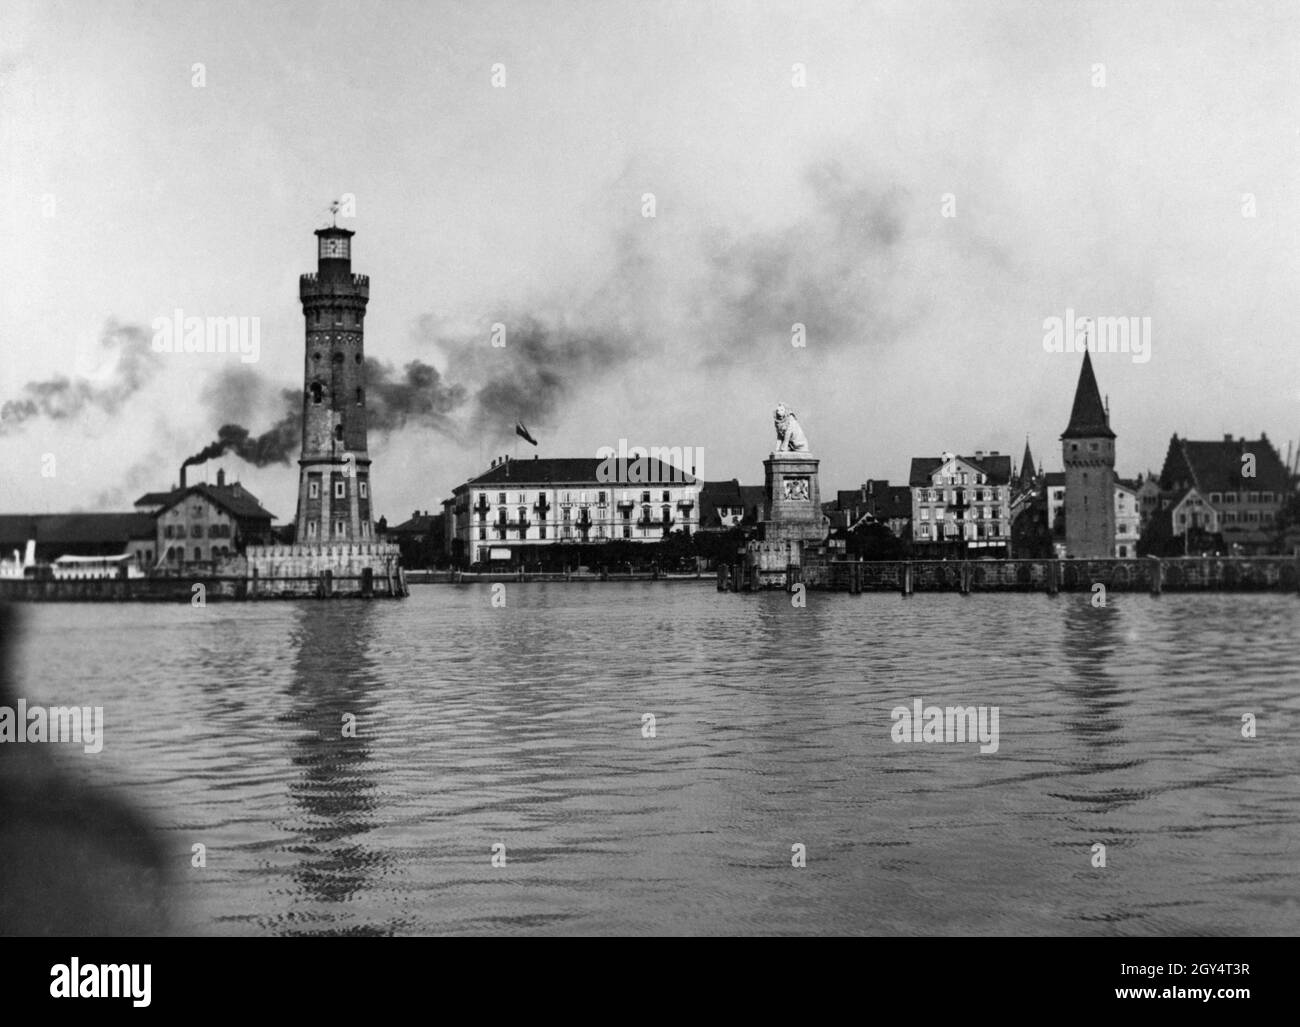 Das Bild zeigt die Hafeneinfahrt zum Hafen von Lindau im Bodensee, die vom Neuen Leuchtturm und dem Bayerischen Löwen begrenzt wird. Weiter rechts befindet sich der Mangturm. Ganz links raucht auf dem Bahnhofsgelände Rauchschwaden. Das Gebäude in der Mitte des Bildes ist das Hotel Bayerischer Hof, weiter rechts ist das Hotel Reutemann zu sehen. Undatierte Aufnahme aus dem Kunstverlag von Max Stuffler aus München, vermutlich um 1910 aufgenommen. [Automatisierte Übersetzung] Stockfoto